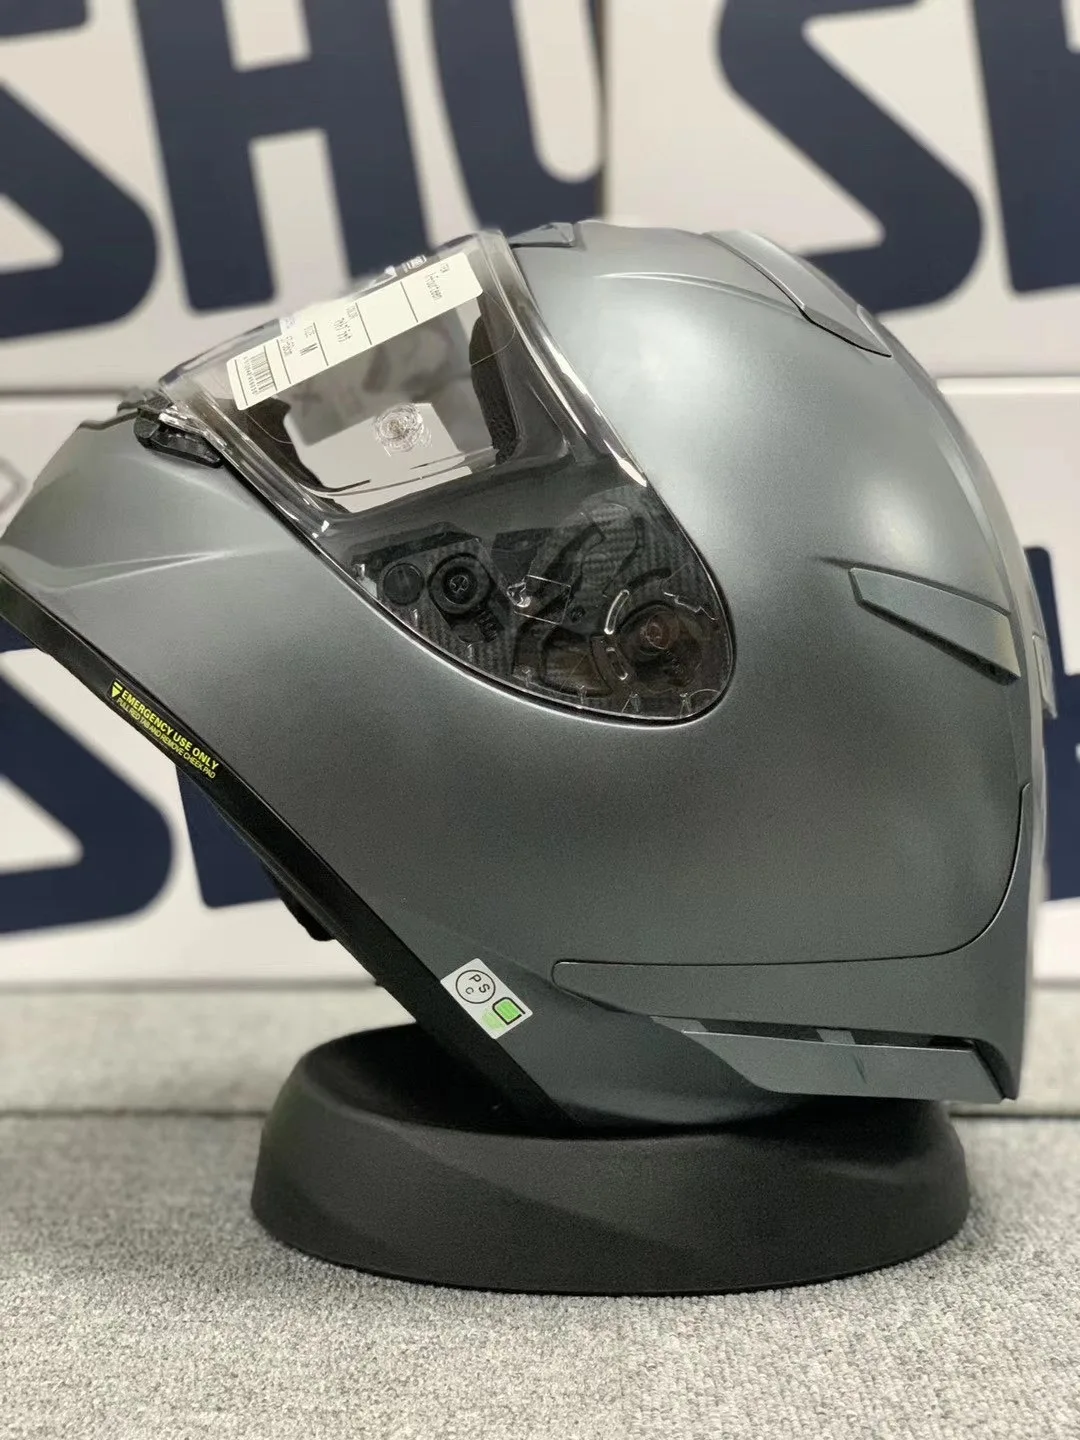 

Мотоциклетный шлем на все лицо X14 93 marquez, матовый синий шлем для езды на мотоцикле, гоночный мотоциклетный шлем